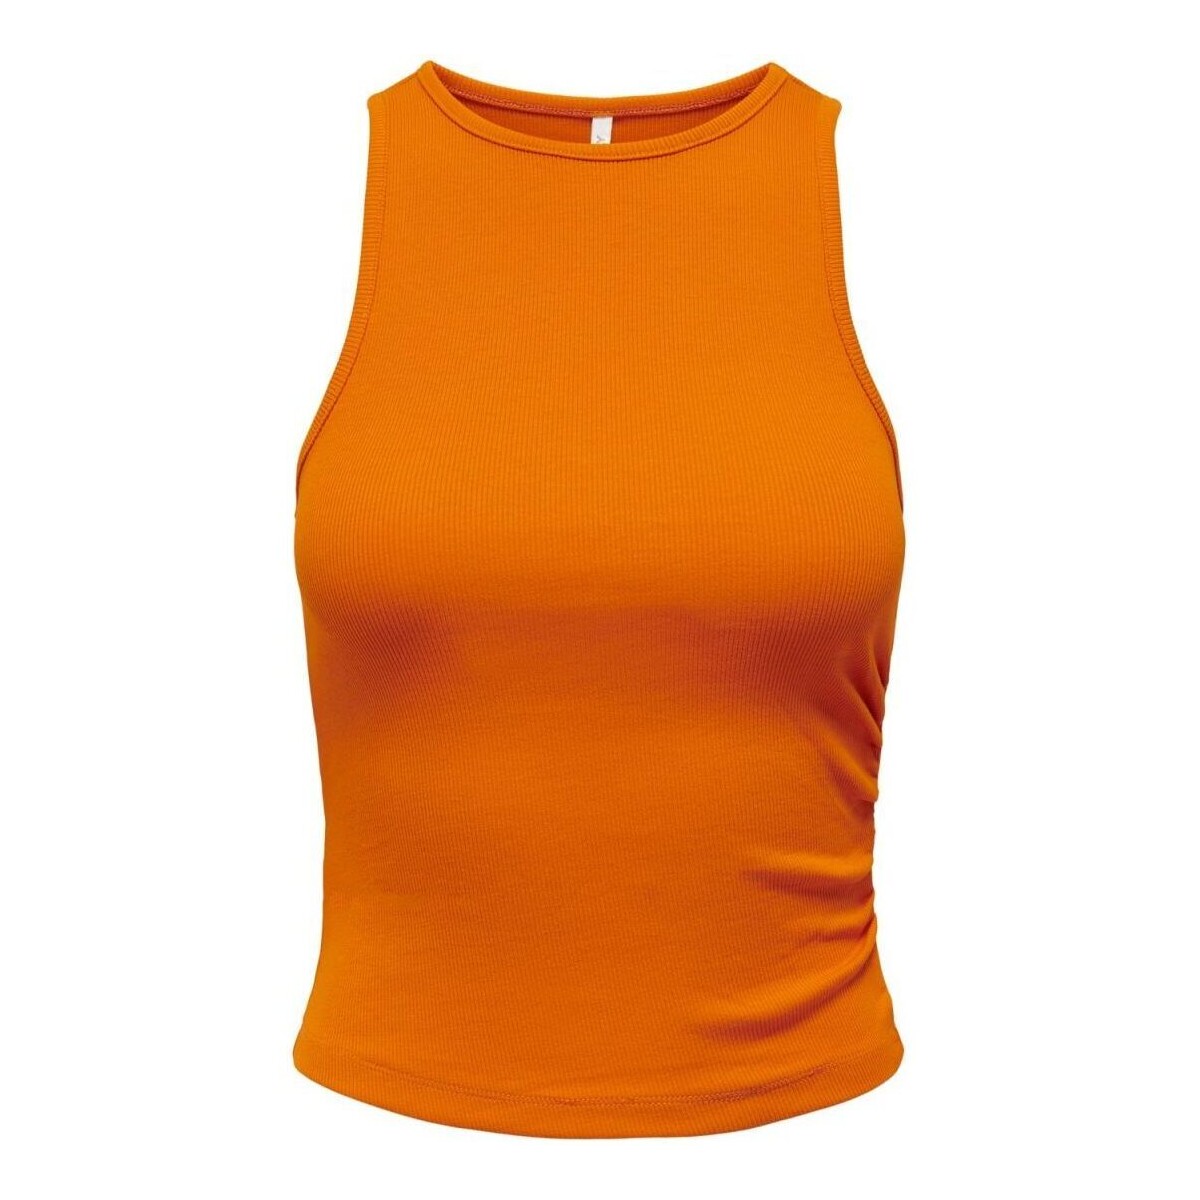 Abbigliamento Donna Top / T-shirt senza maniche Only 15294173 NILAN-ORANGE PEPPER Arancio